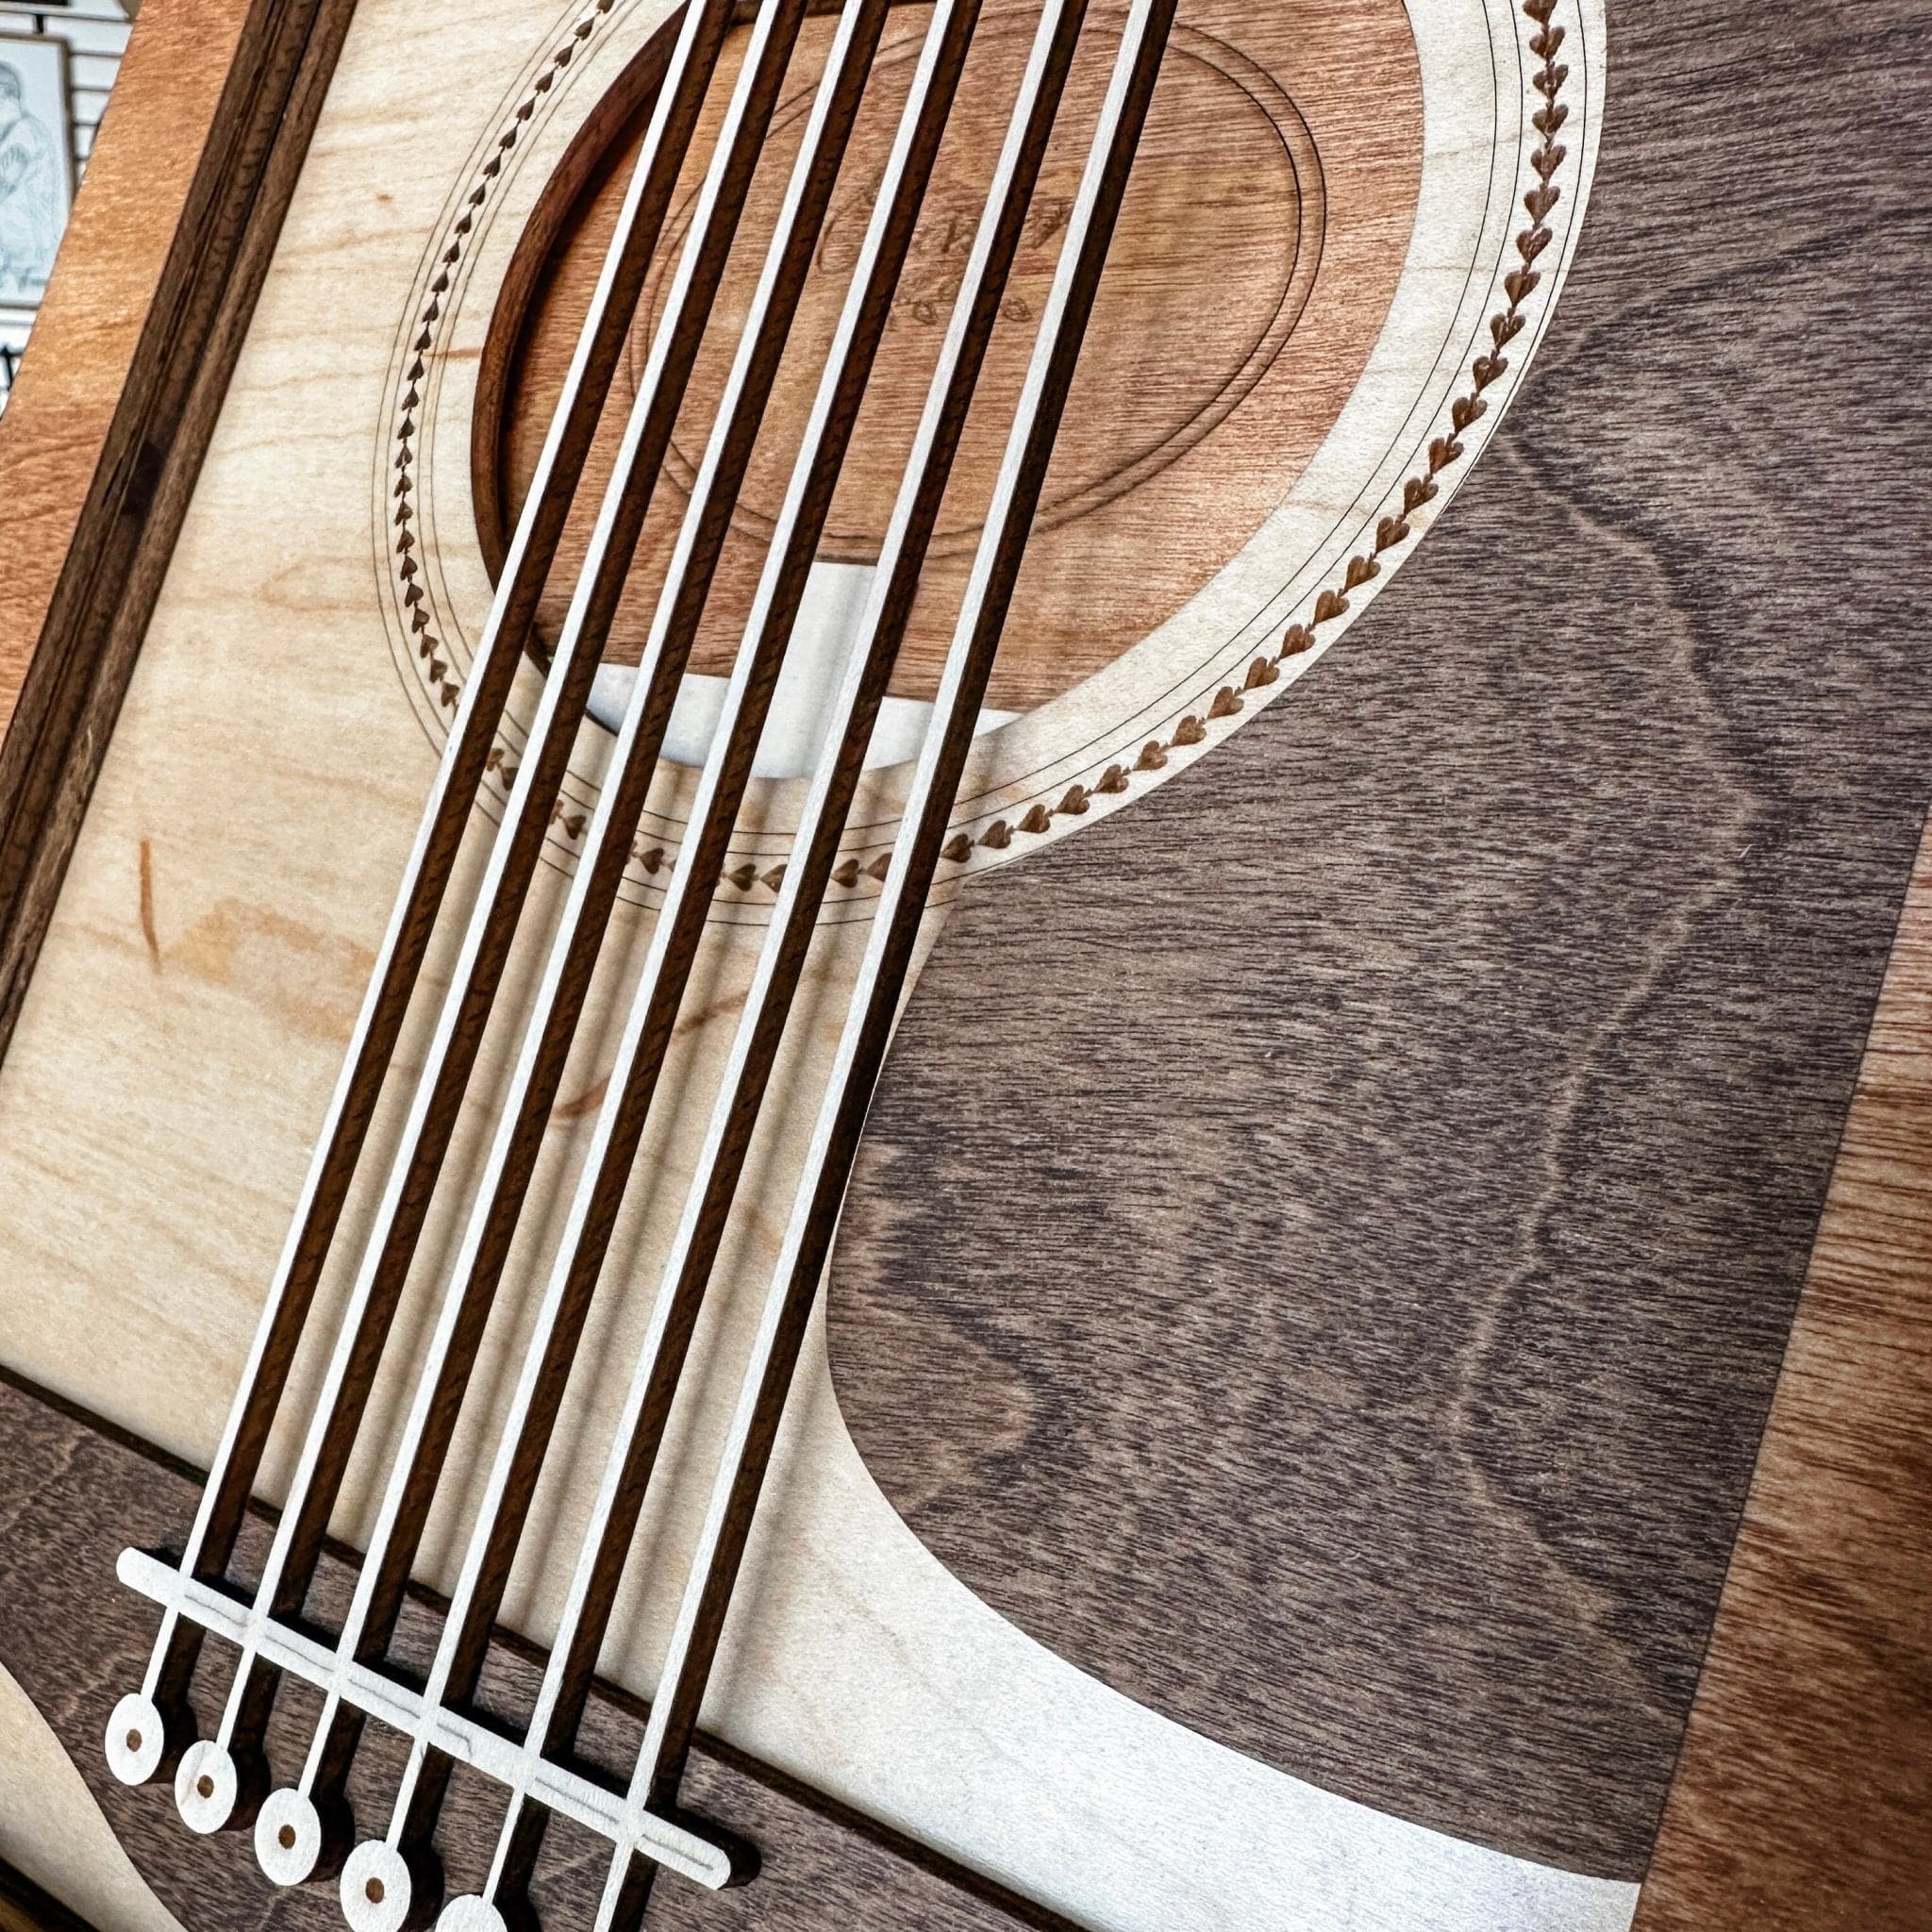 Multilayer Guitar 3D Wood Art - Sticks & Doodles